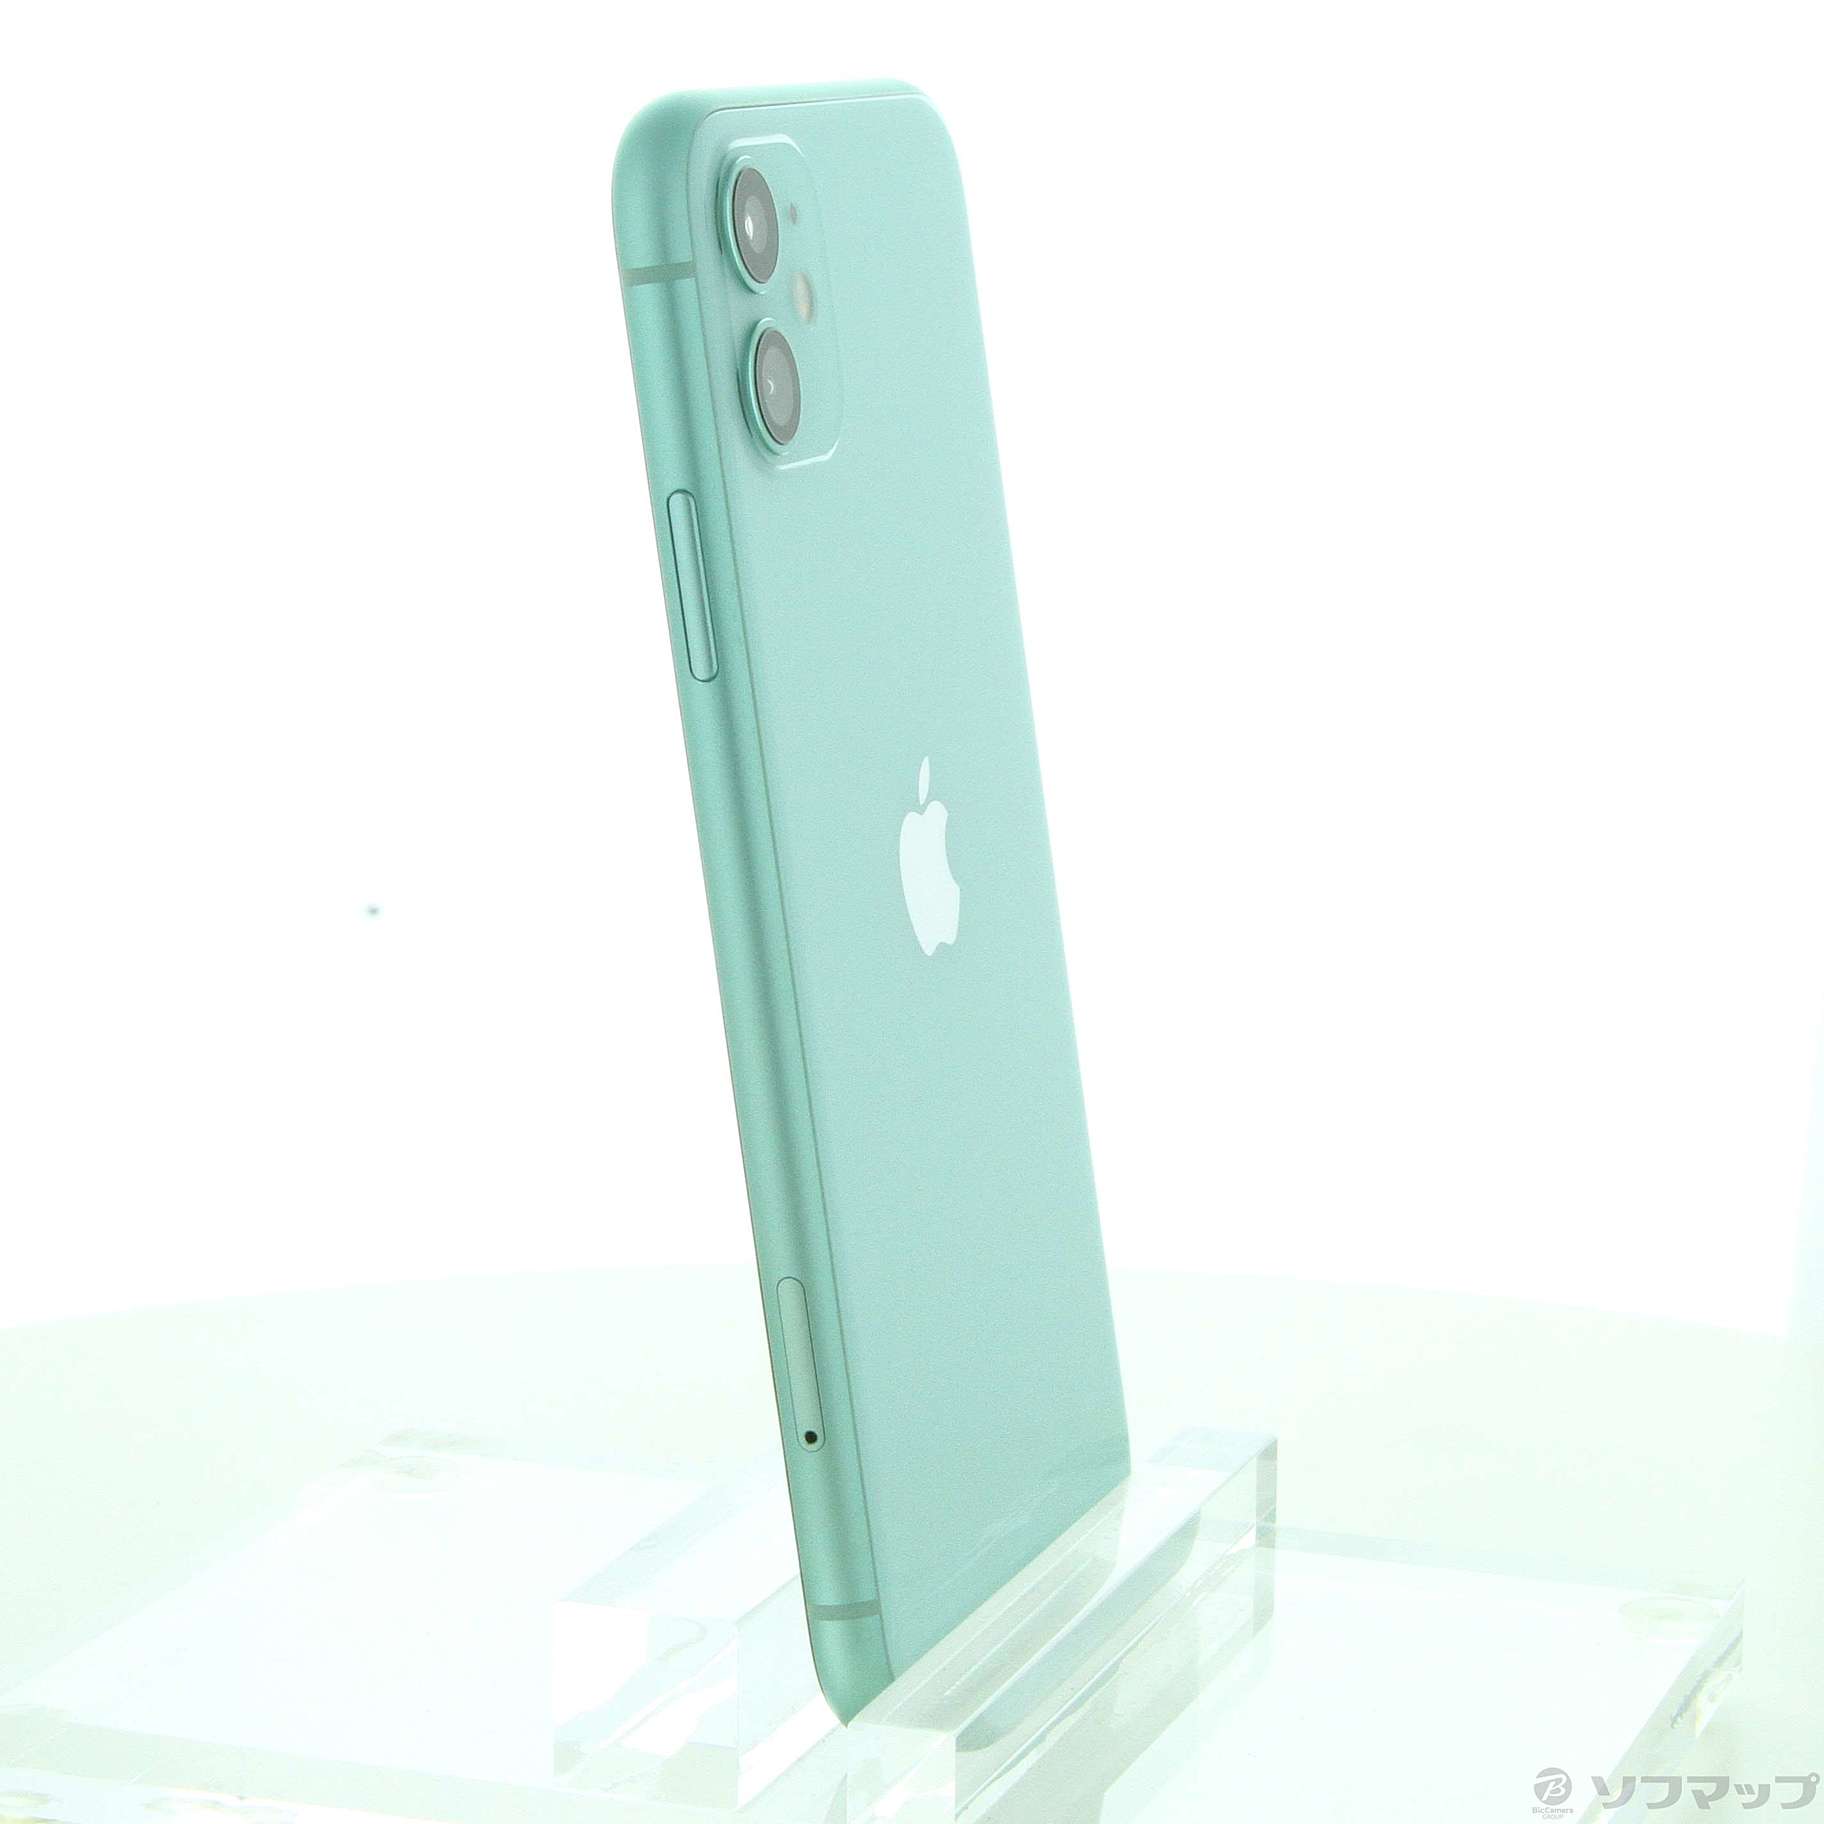 大特価!! Apple iPhone11 グリーン 64GB スマートフォン本体 - leica